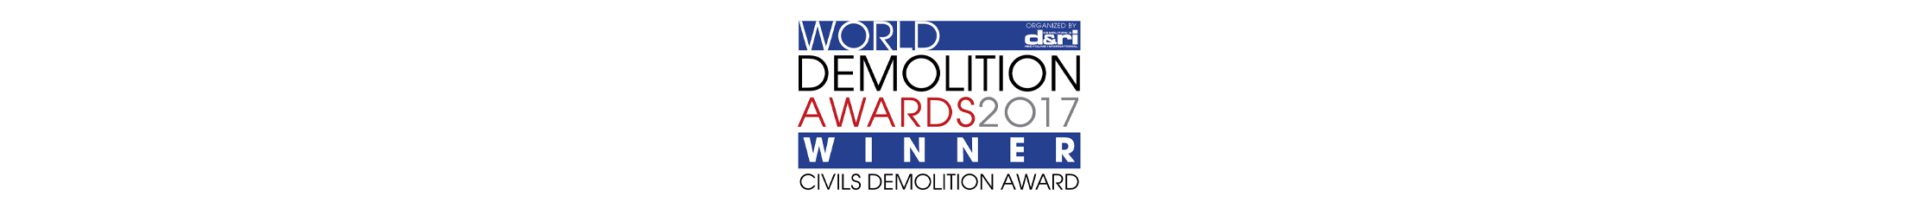 Demolition Awards 2017 winner logo - Civils Demolition Award